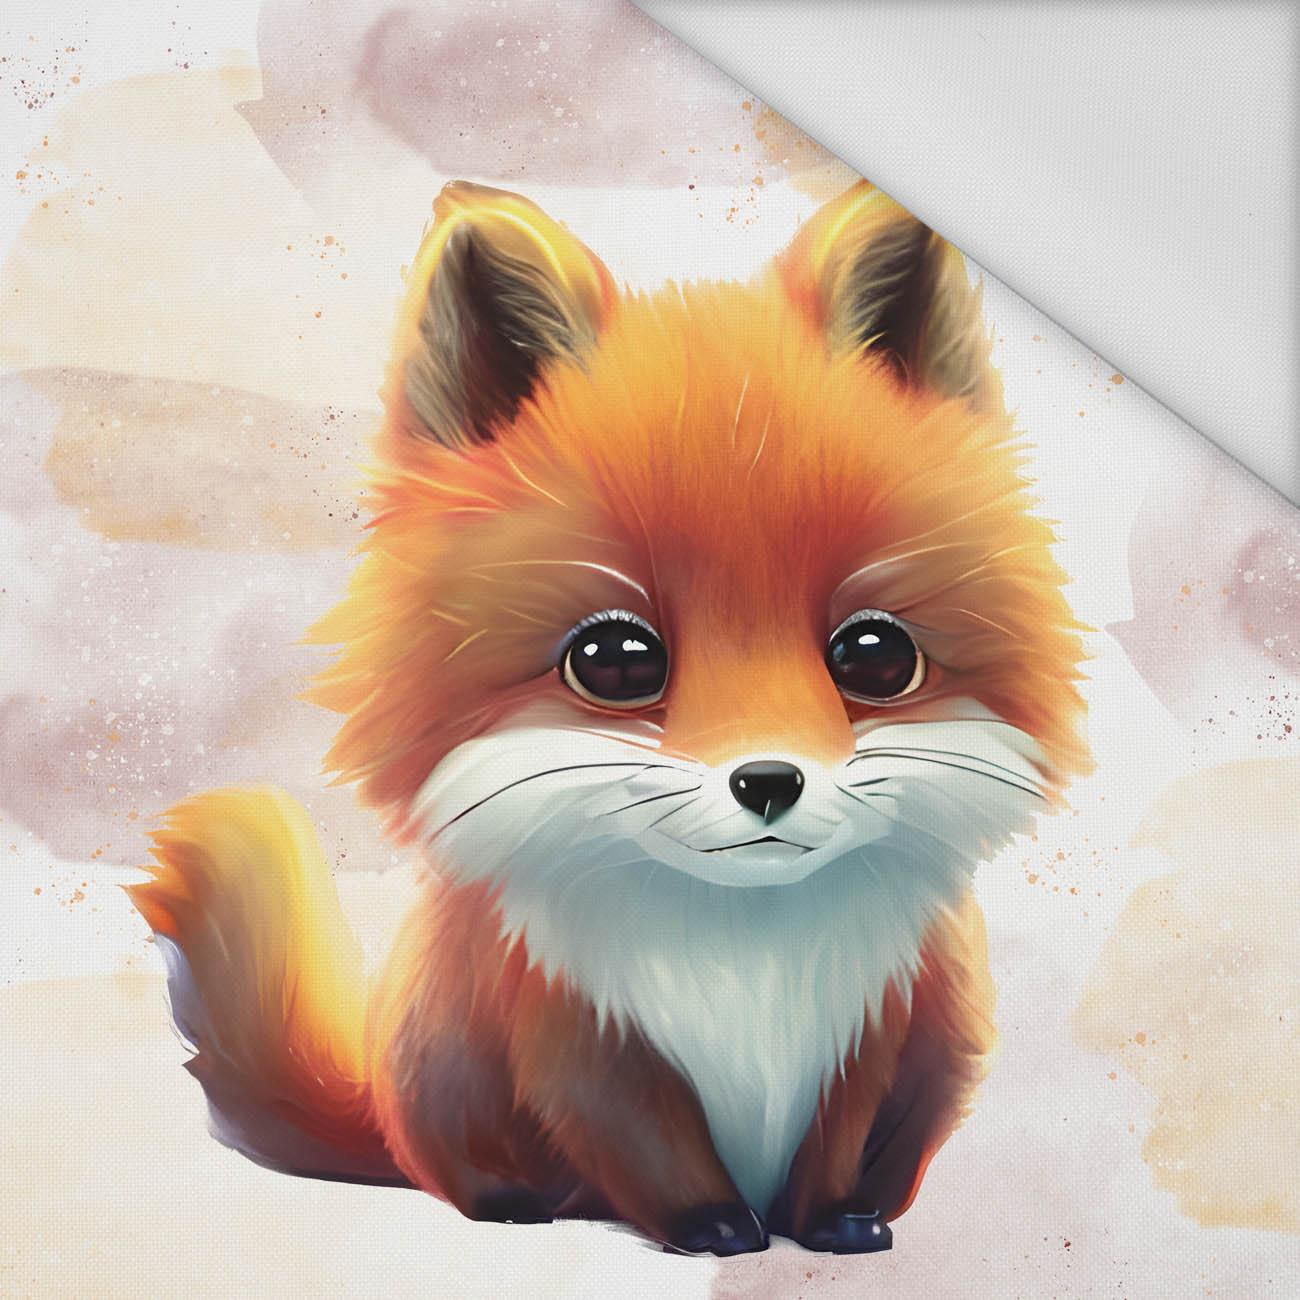 BABY FOX - Paneel (75cm x 80cm) Wasserabweisende Webware